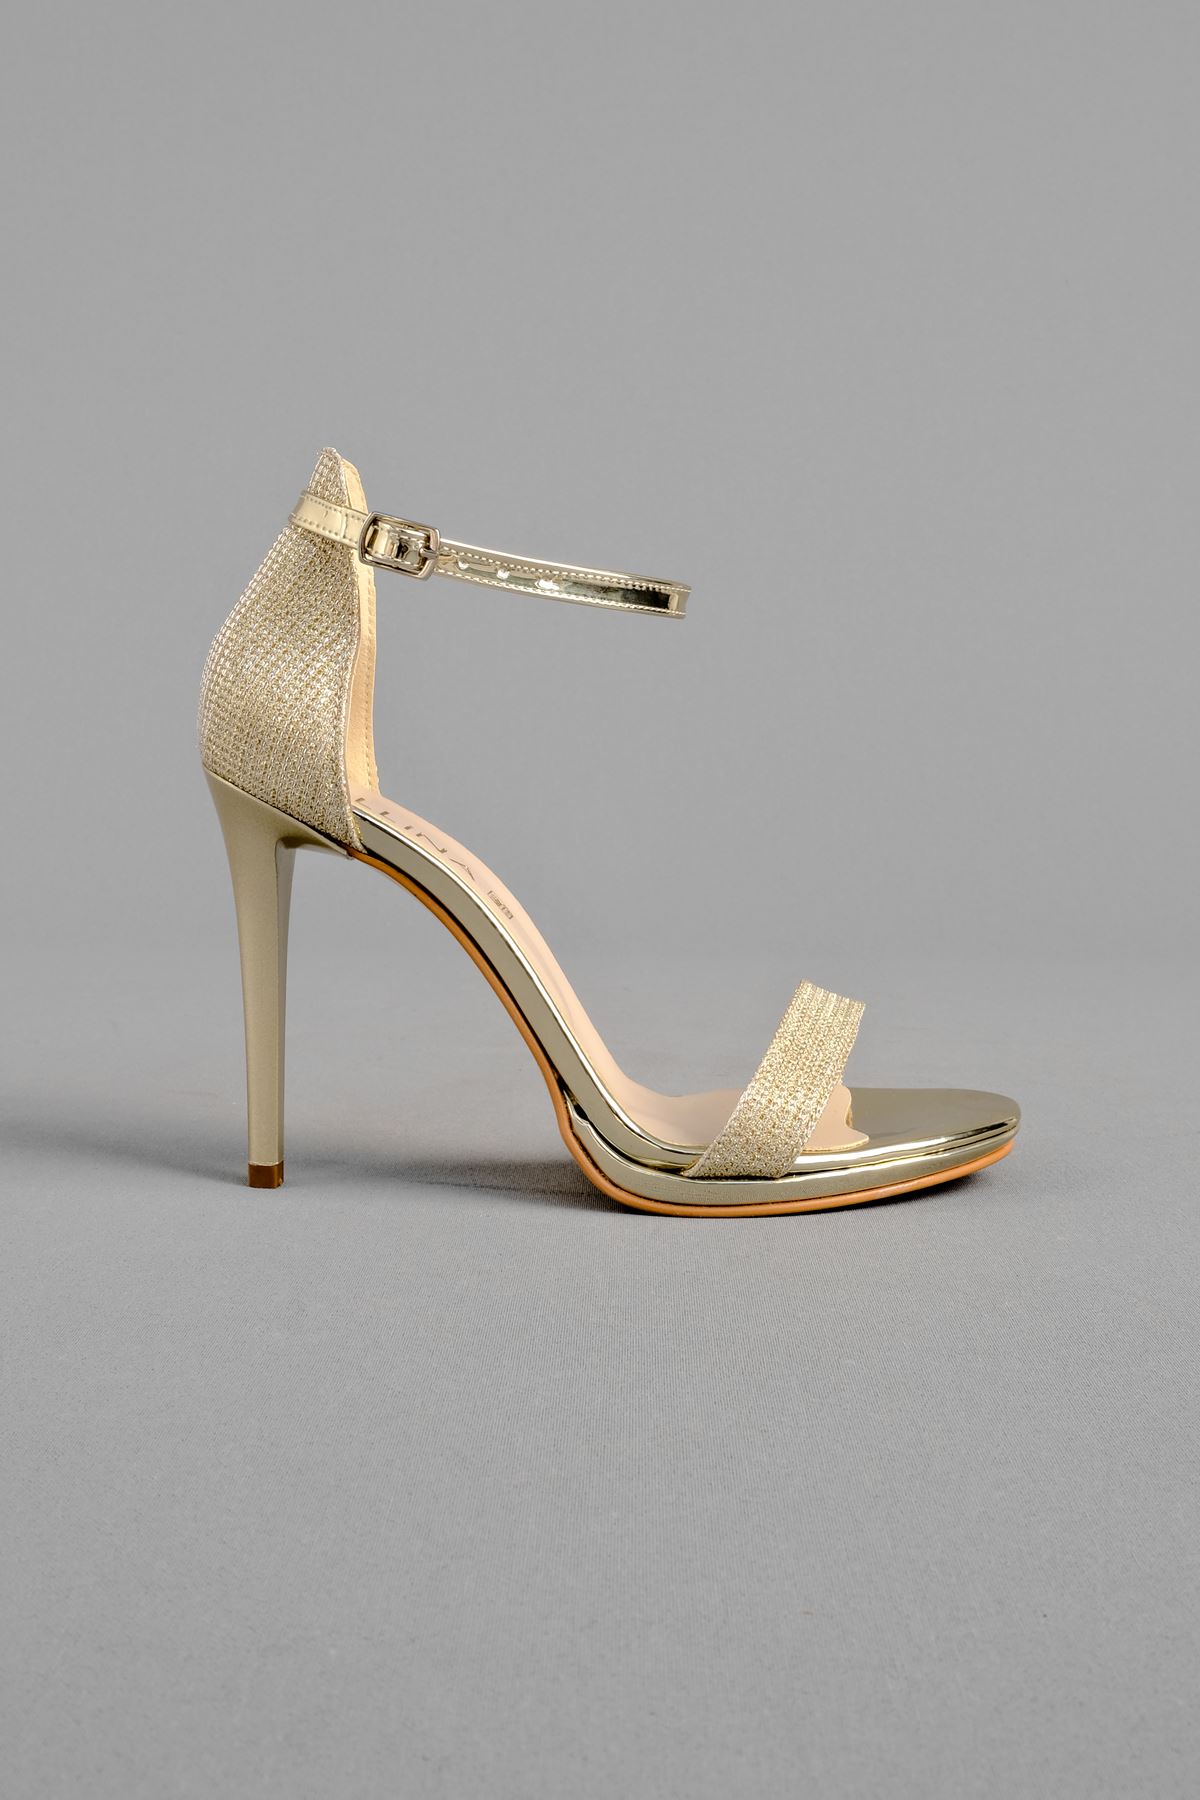 Cora Kadın Topuklu Ayakkabı Tek Bant İnce Topuk-Gold